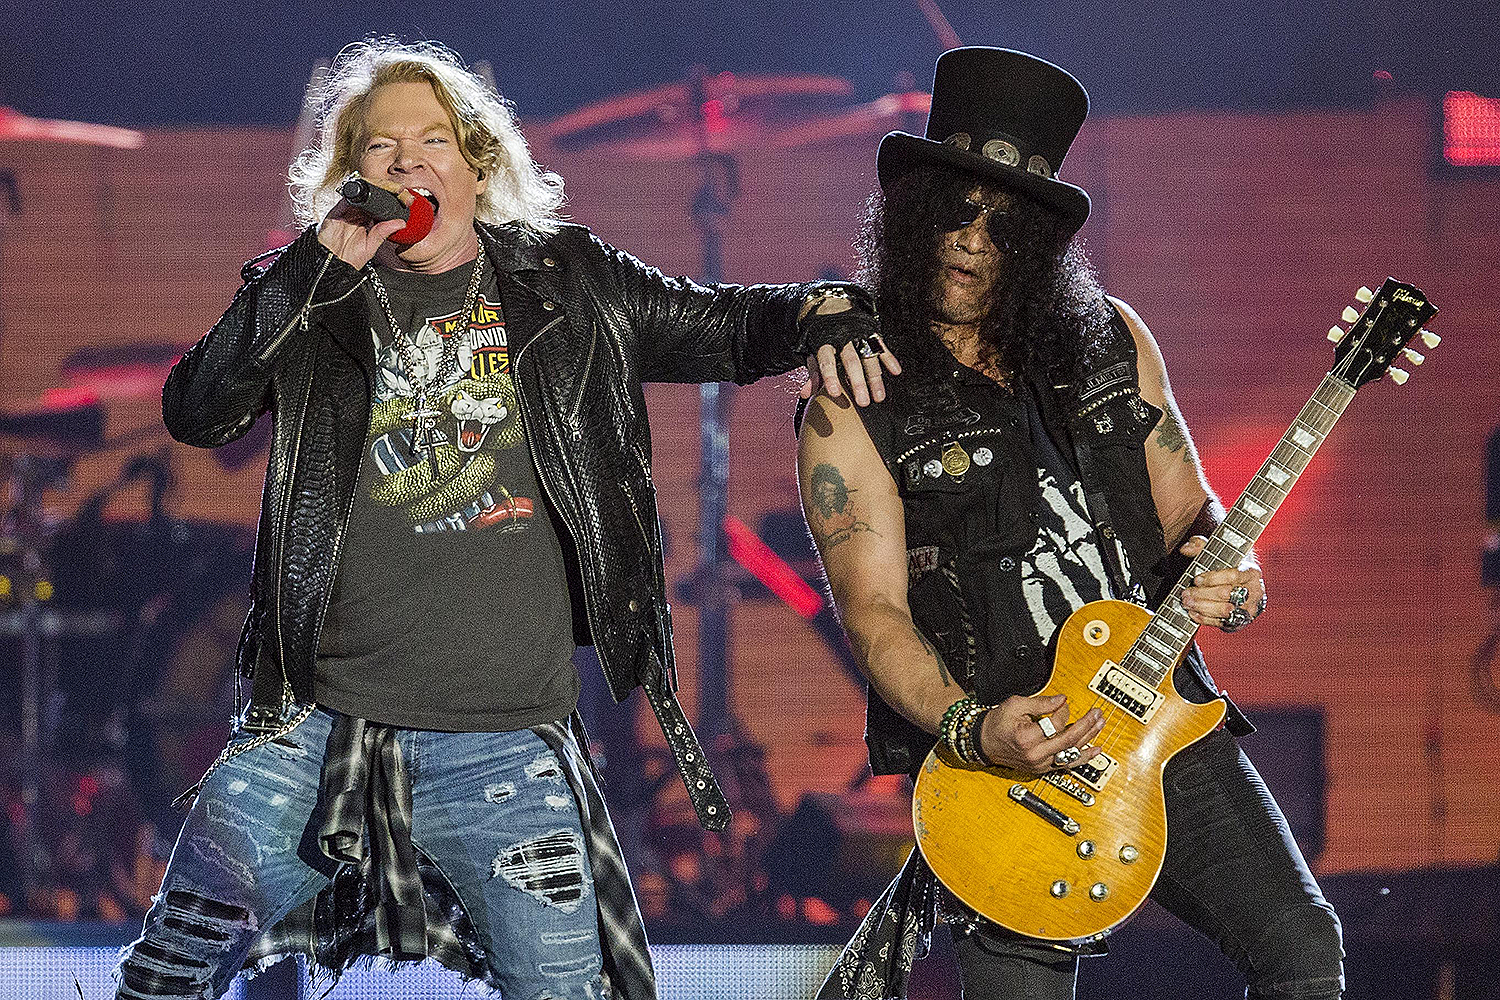 Com voz esganiçada, Axl Rose dá vexame em show do Guns N' Roses | VEJA